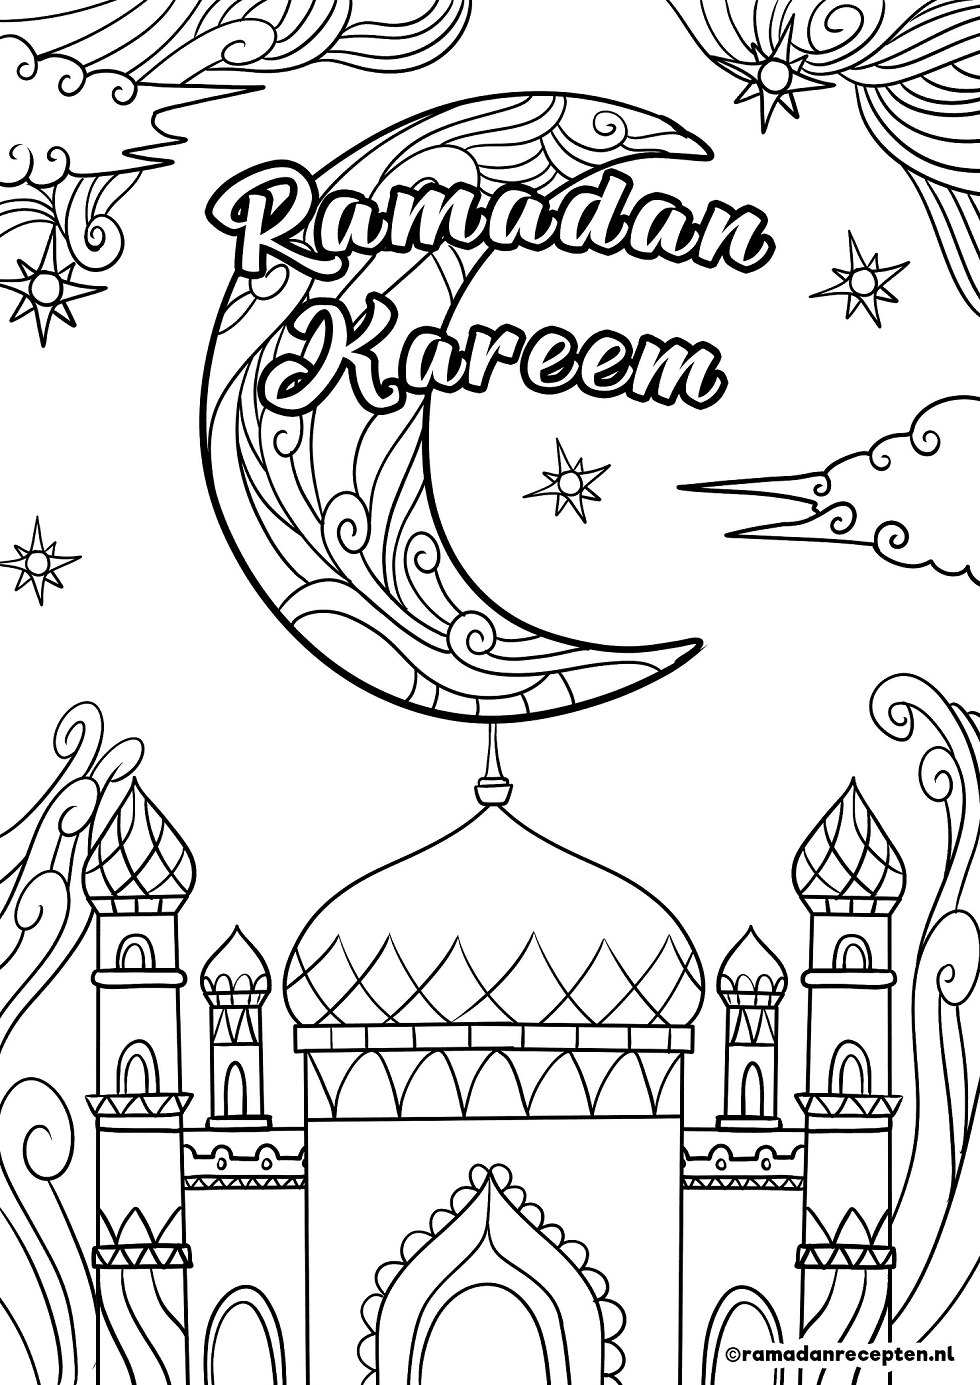 Ramadan Kareem Free Coloring Page